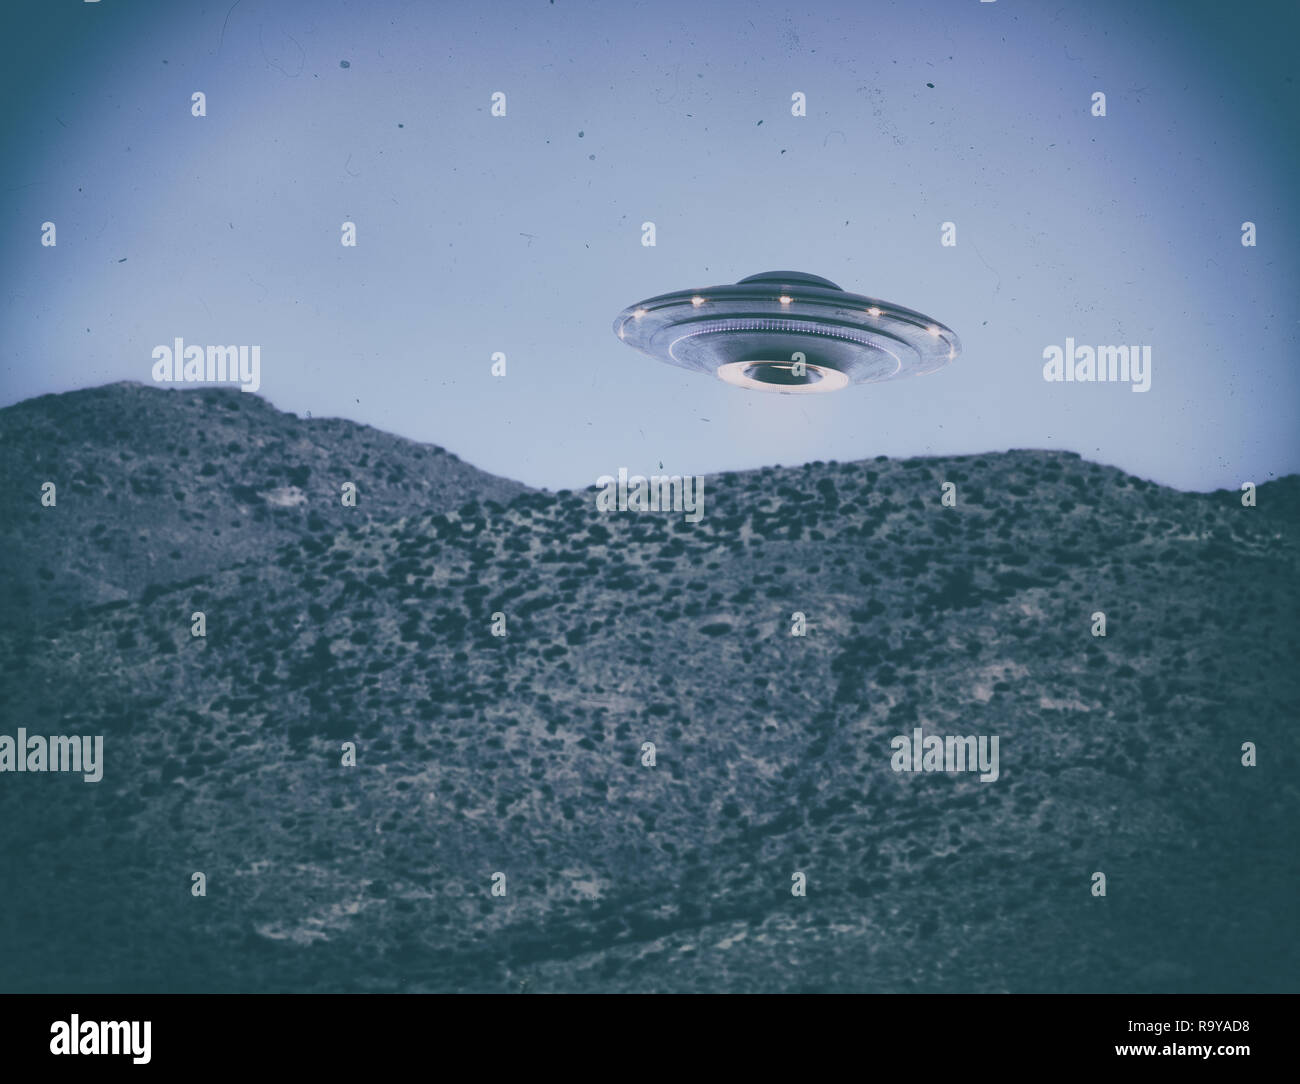 Oggetto Volante non Identificato UFO. Il vecchio stile foto con ISO elevata rumorosità e sporcizia con graffi nel tempo. Percorso di clipping incluso. Foto Stock